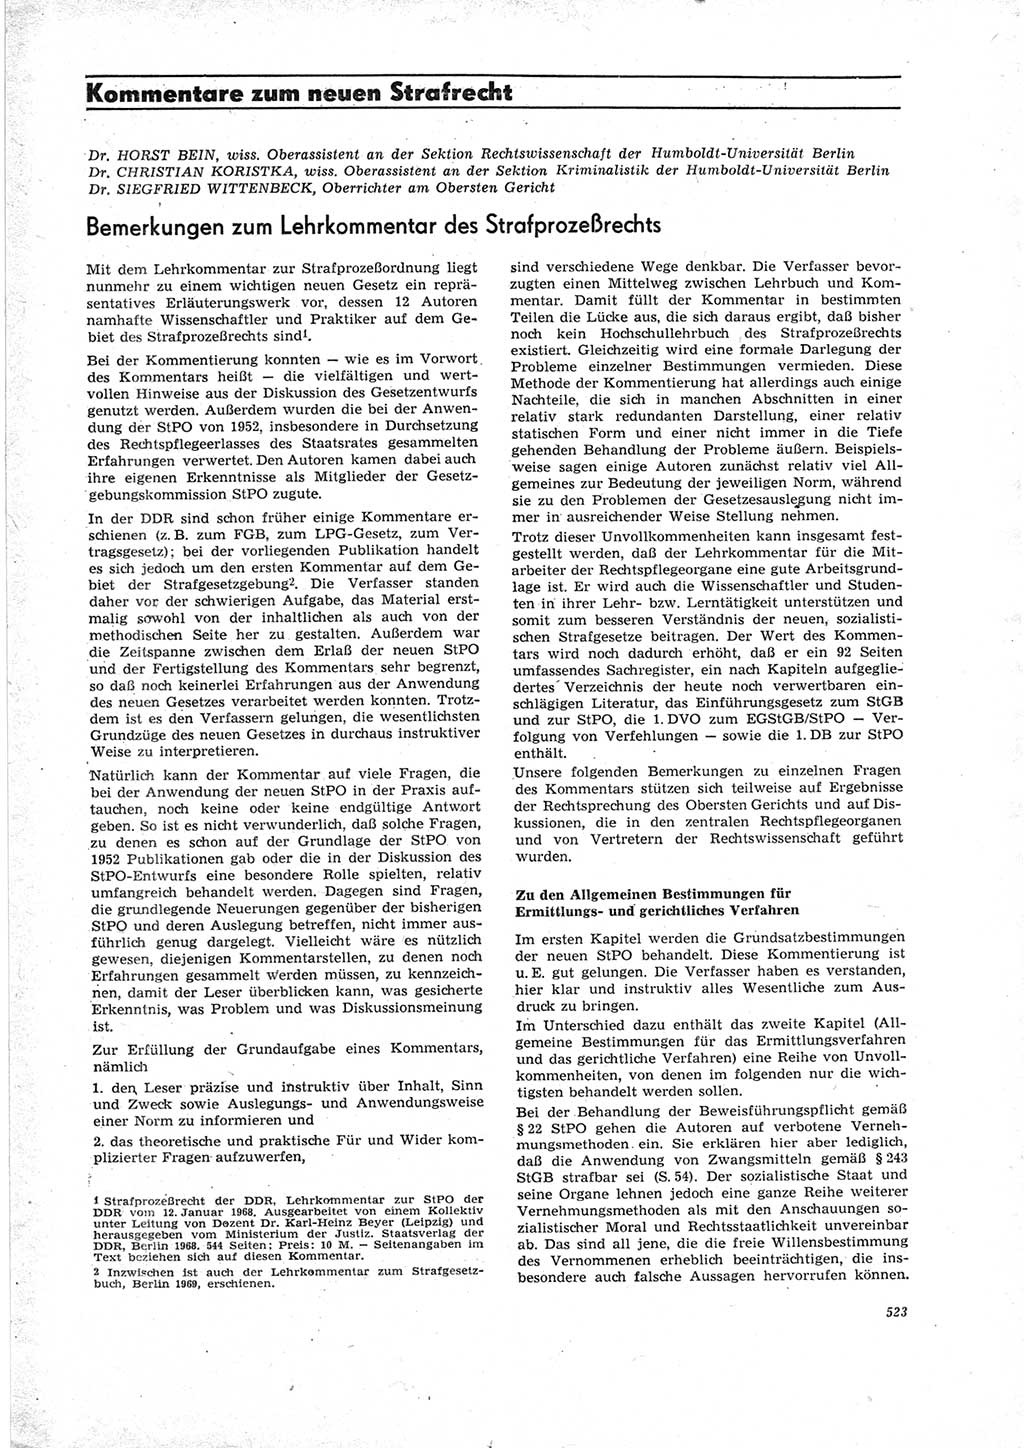 Neue Justiz (NJ), Zeitschrift für Recht und Rechtswissenschaft [Deutsche Demokratische Republik (DDR)], 23. Jahrgang 1969, Seite 523 (NJ DDR 1969, S. 523)